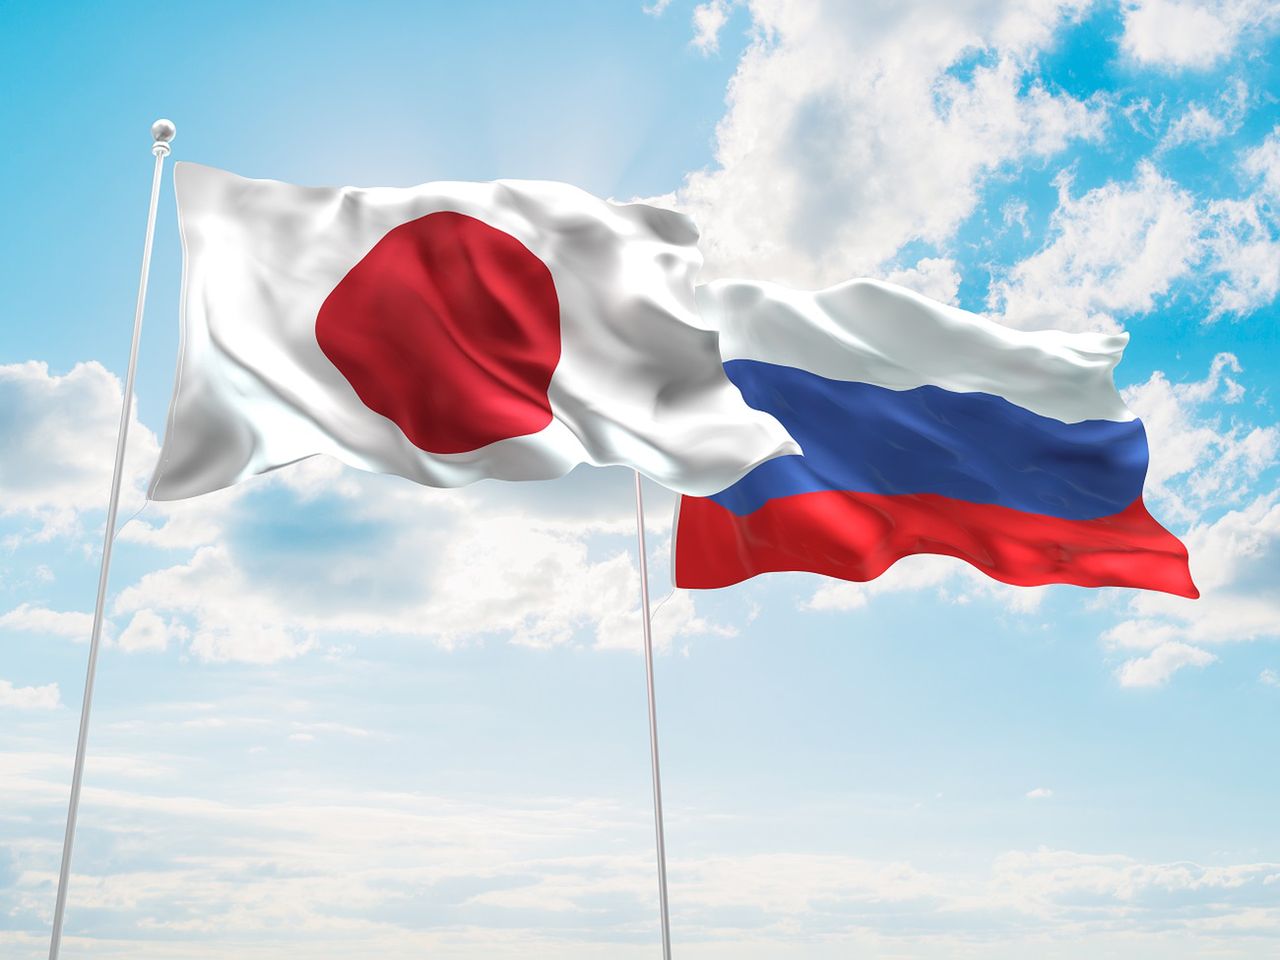 Rosja przetrzymuje japońskich rybaków. Tokio reaguje